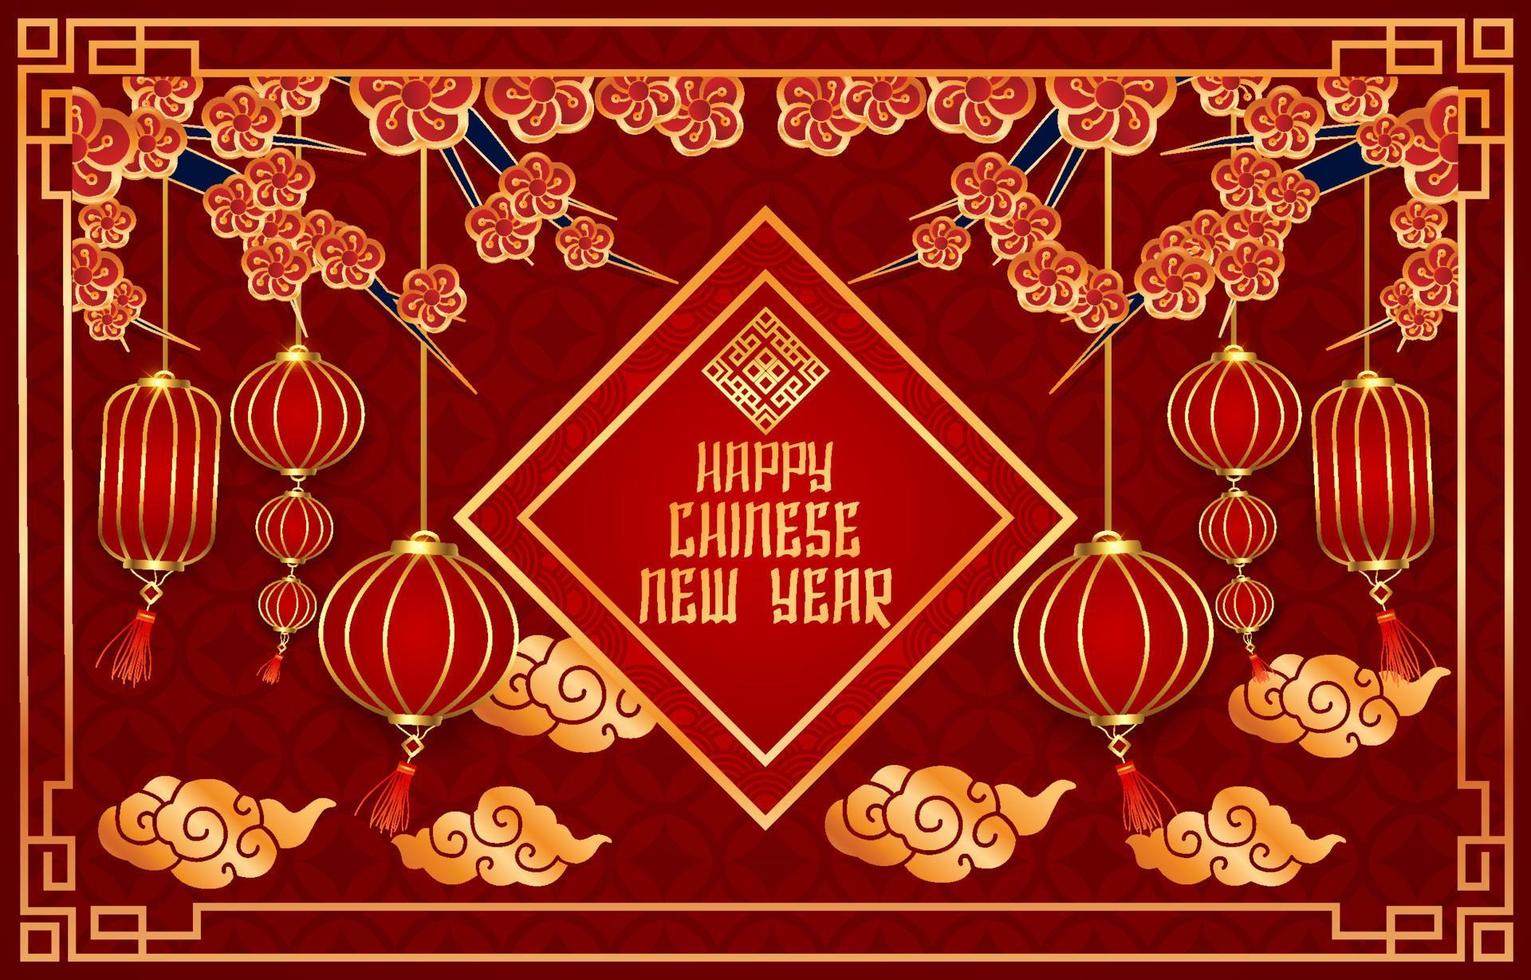 fondo de linterna de año nuevo chino vector